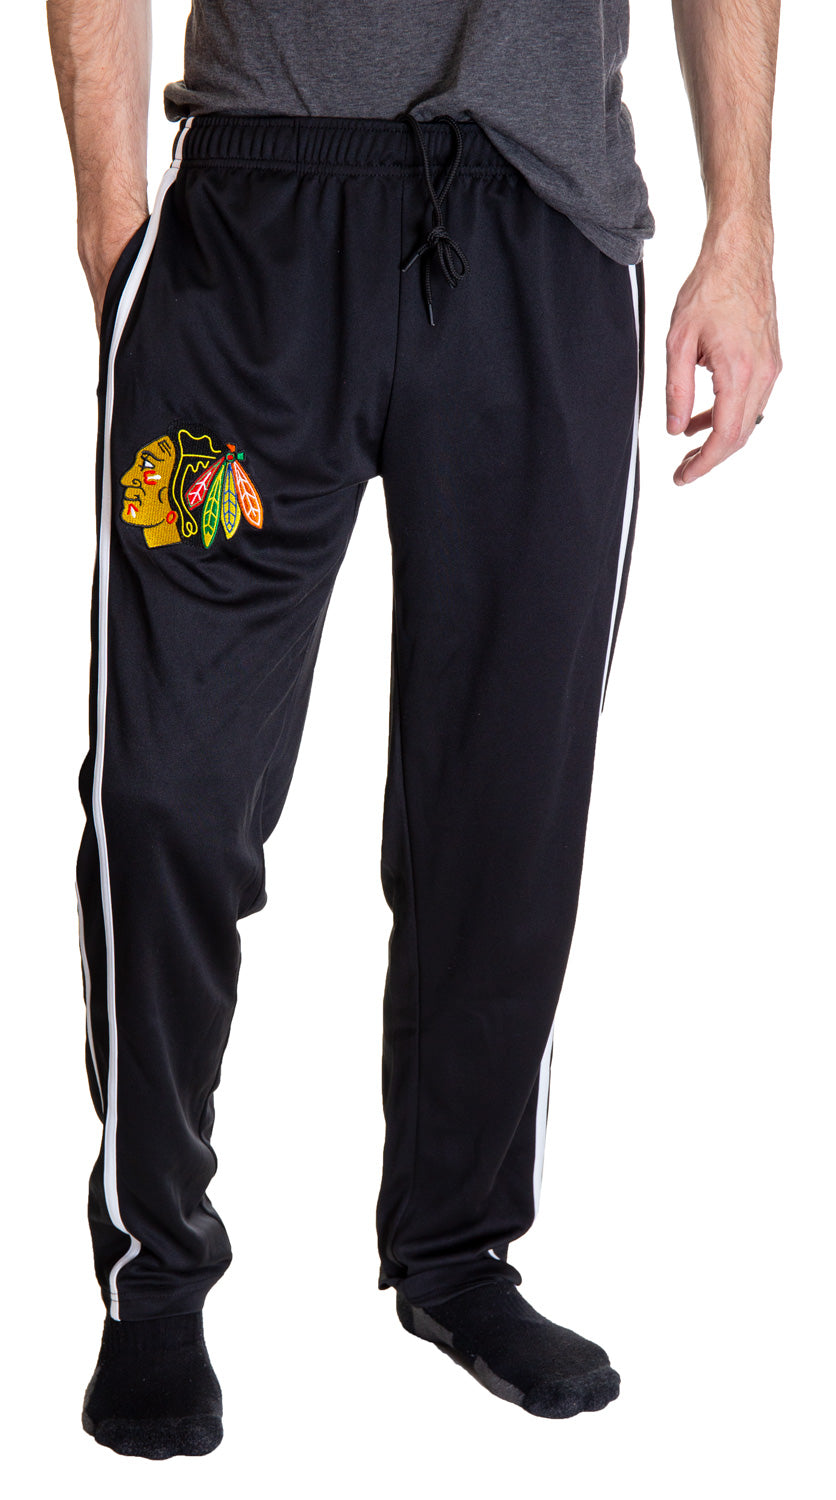 Chicago Blackhawks Striped Training Pants for Men